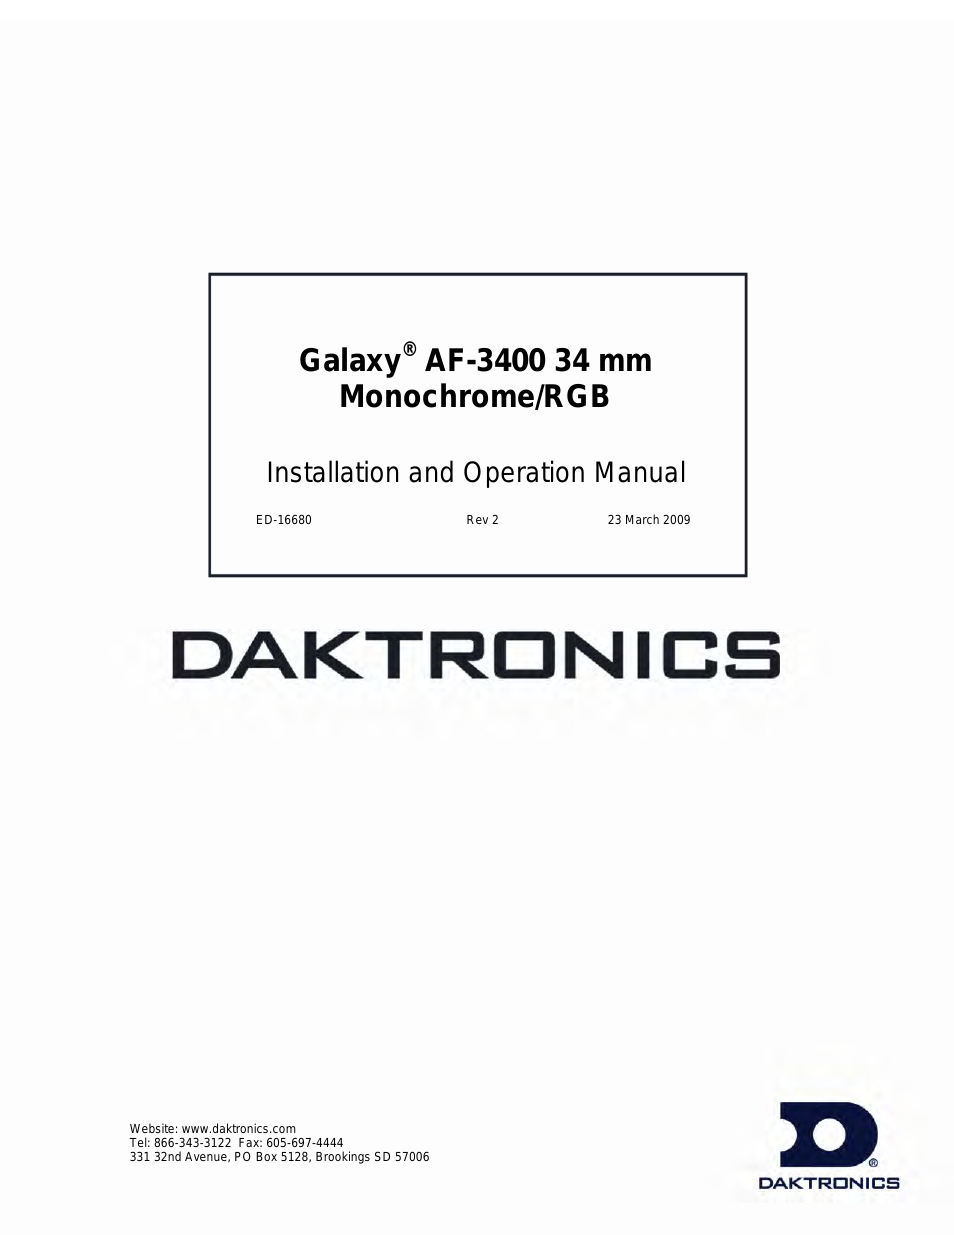 Galaxy AF-3400 34 mm Monochrome/RGB